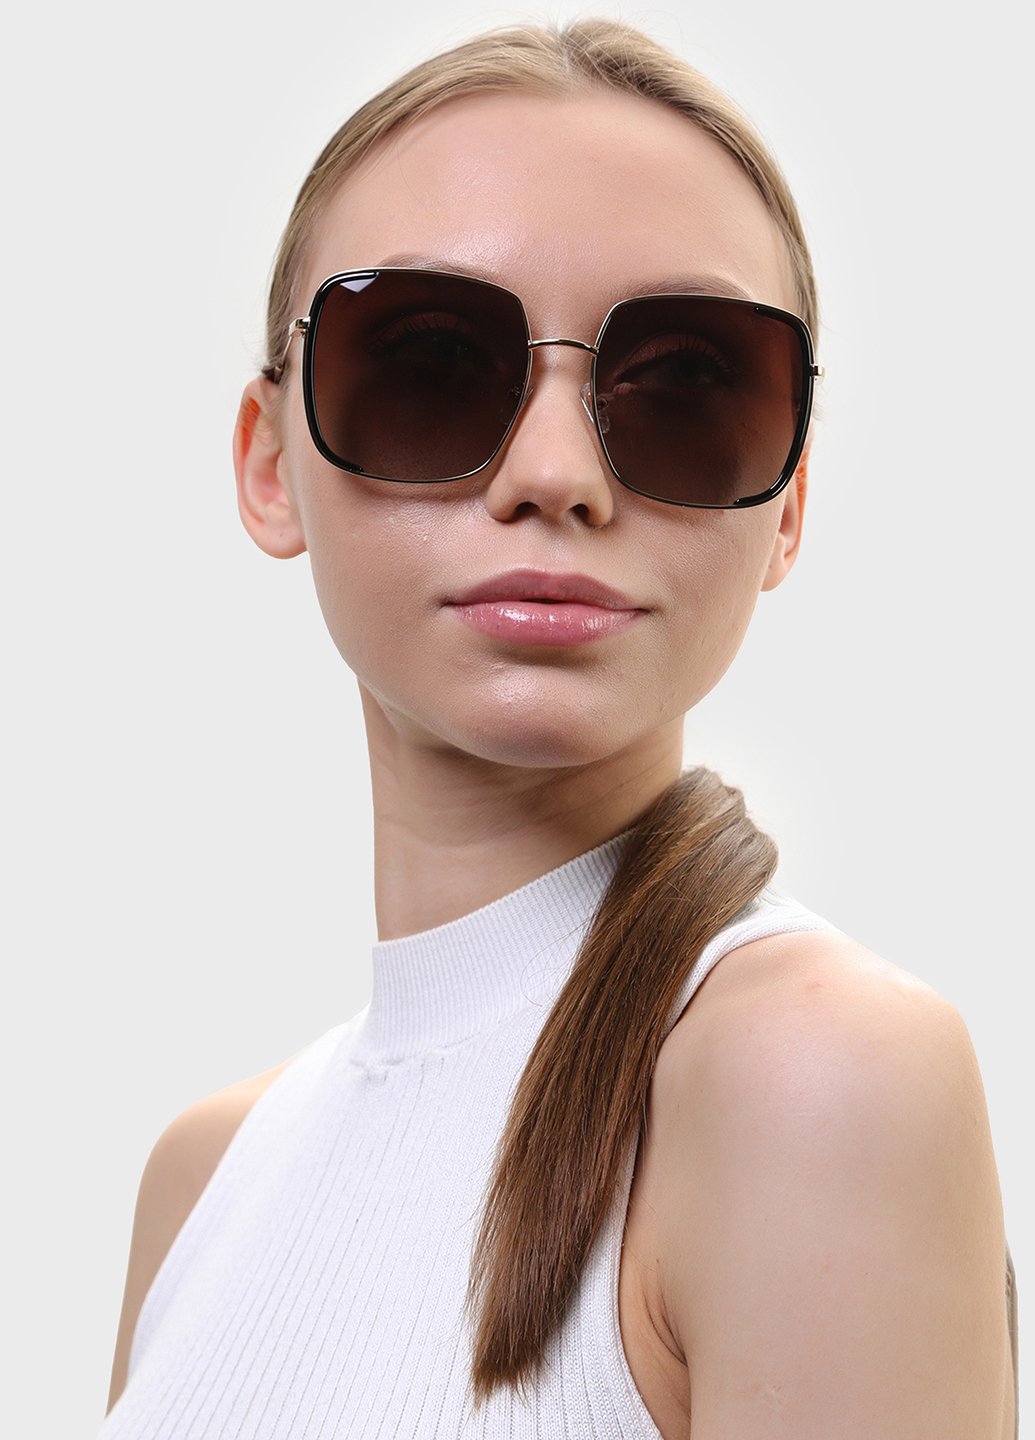 Купить Женские солнцезащитные очки Katrin Jones с поляризацией KJ0852 180048 - Золотистый в интернет-магазине